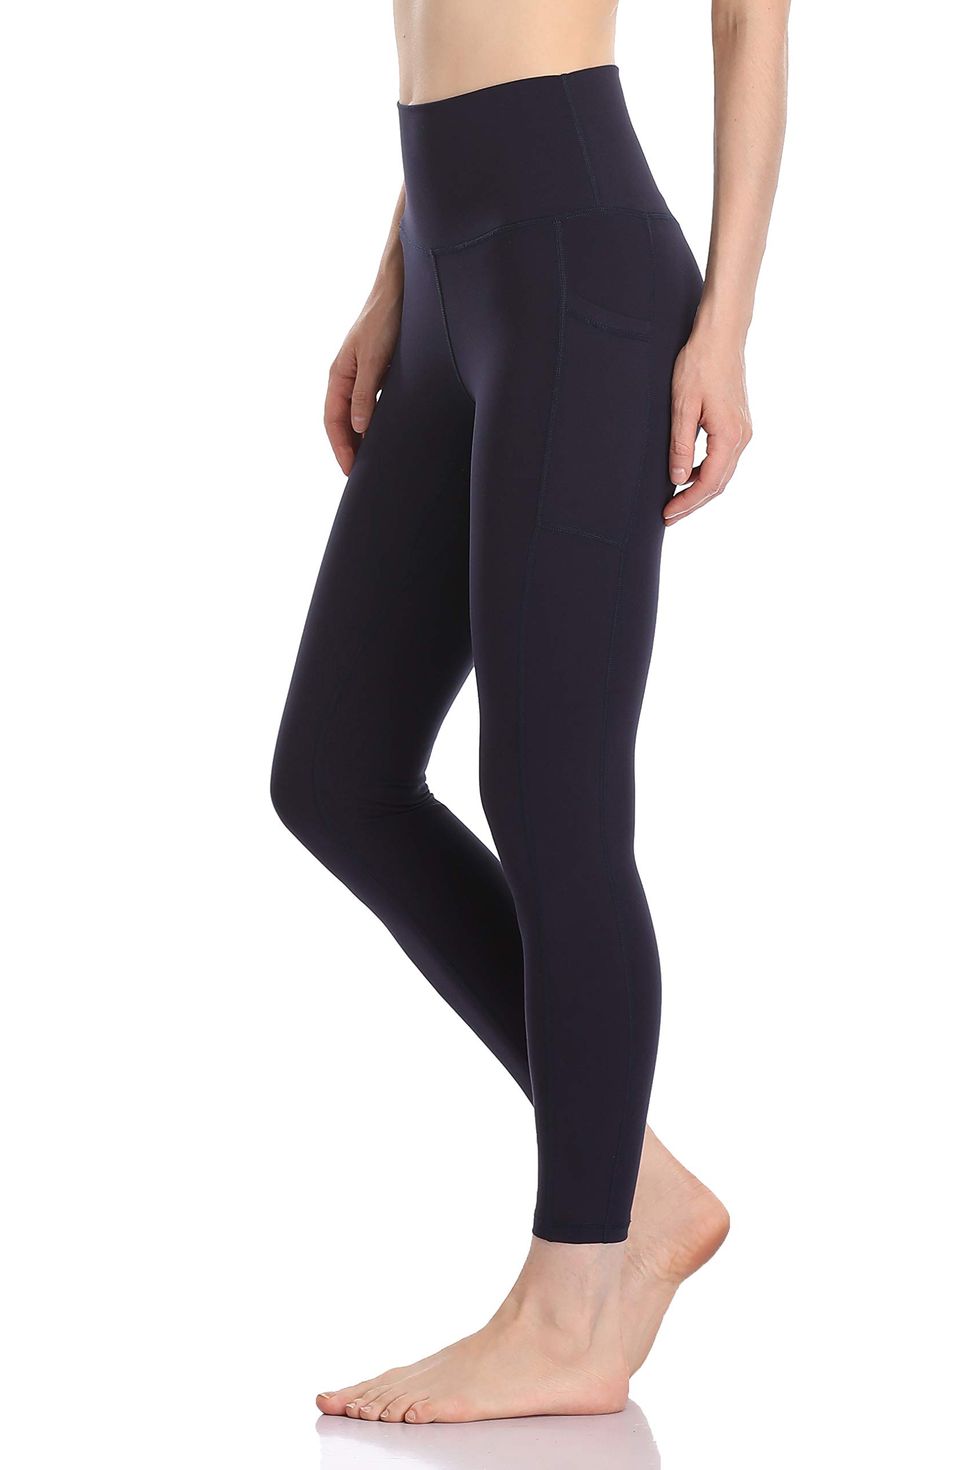  Colorfulkoala Womens High Waisted Tummy Control Workout  Leggings 7/8 Length Yoga Pants